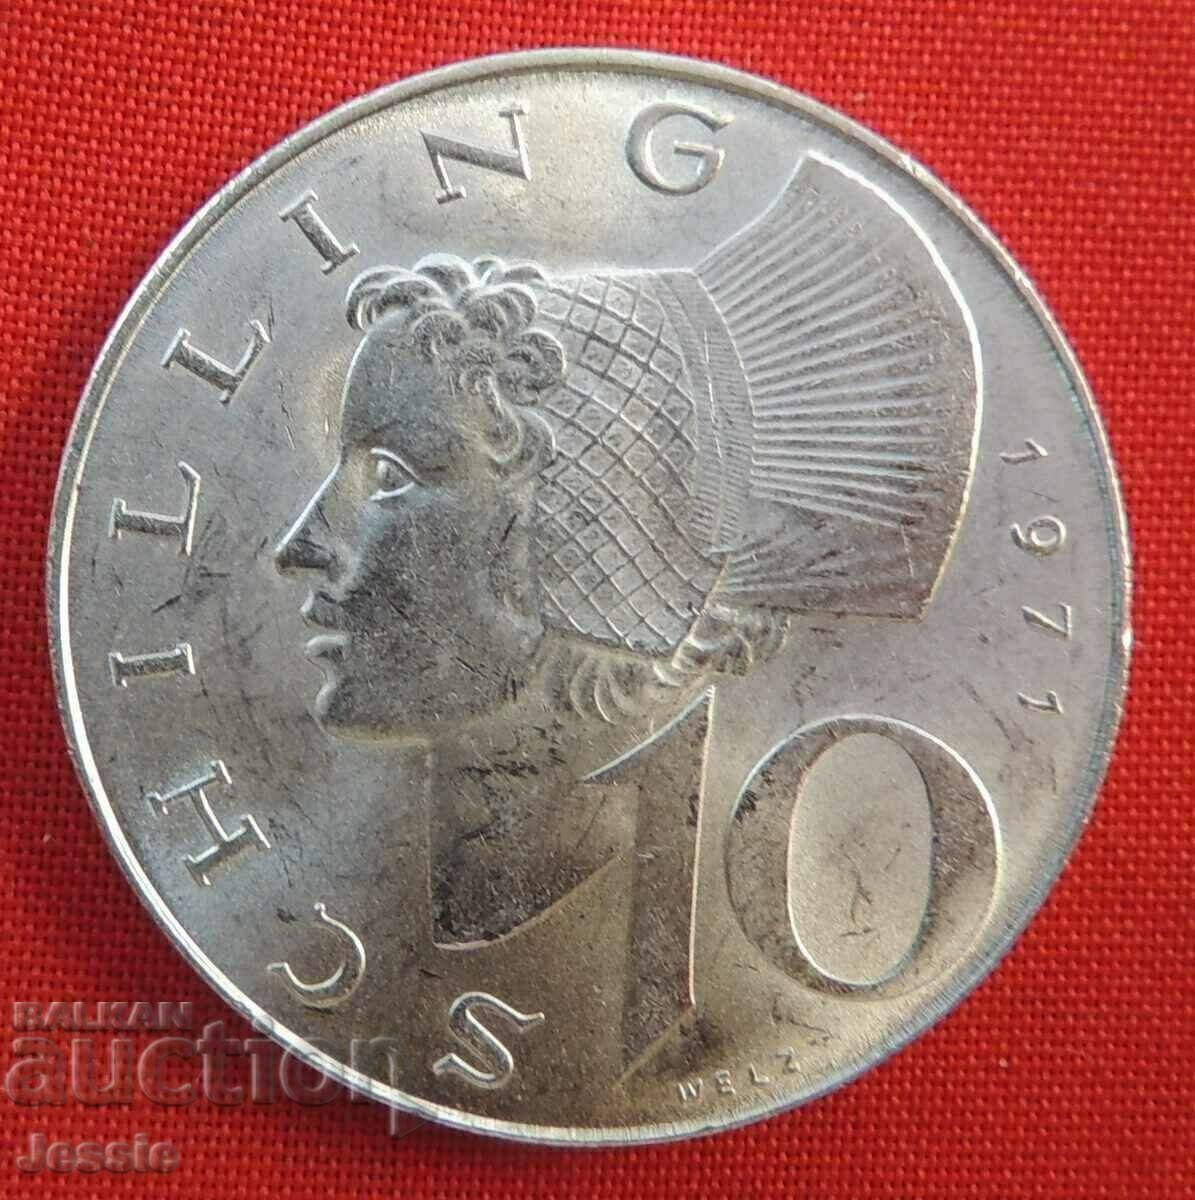 10 шилинга Австрия сребро 1971 г. - КАЧЕСТВО -